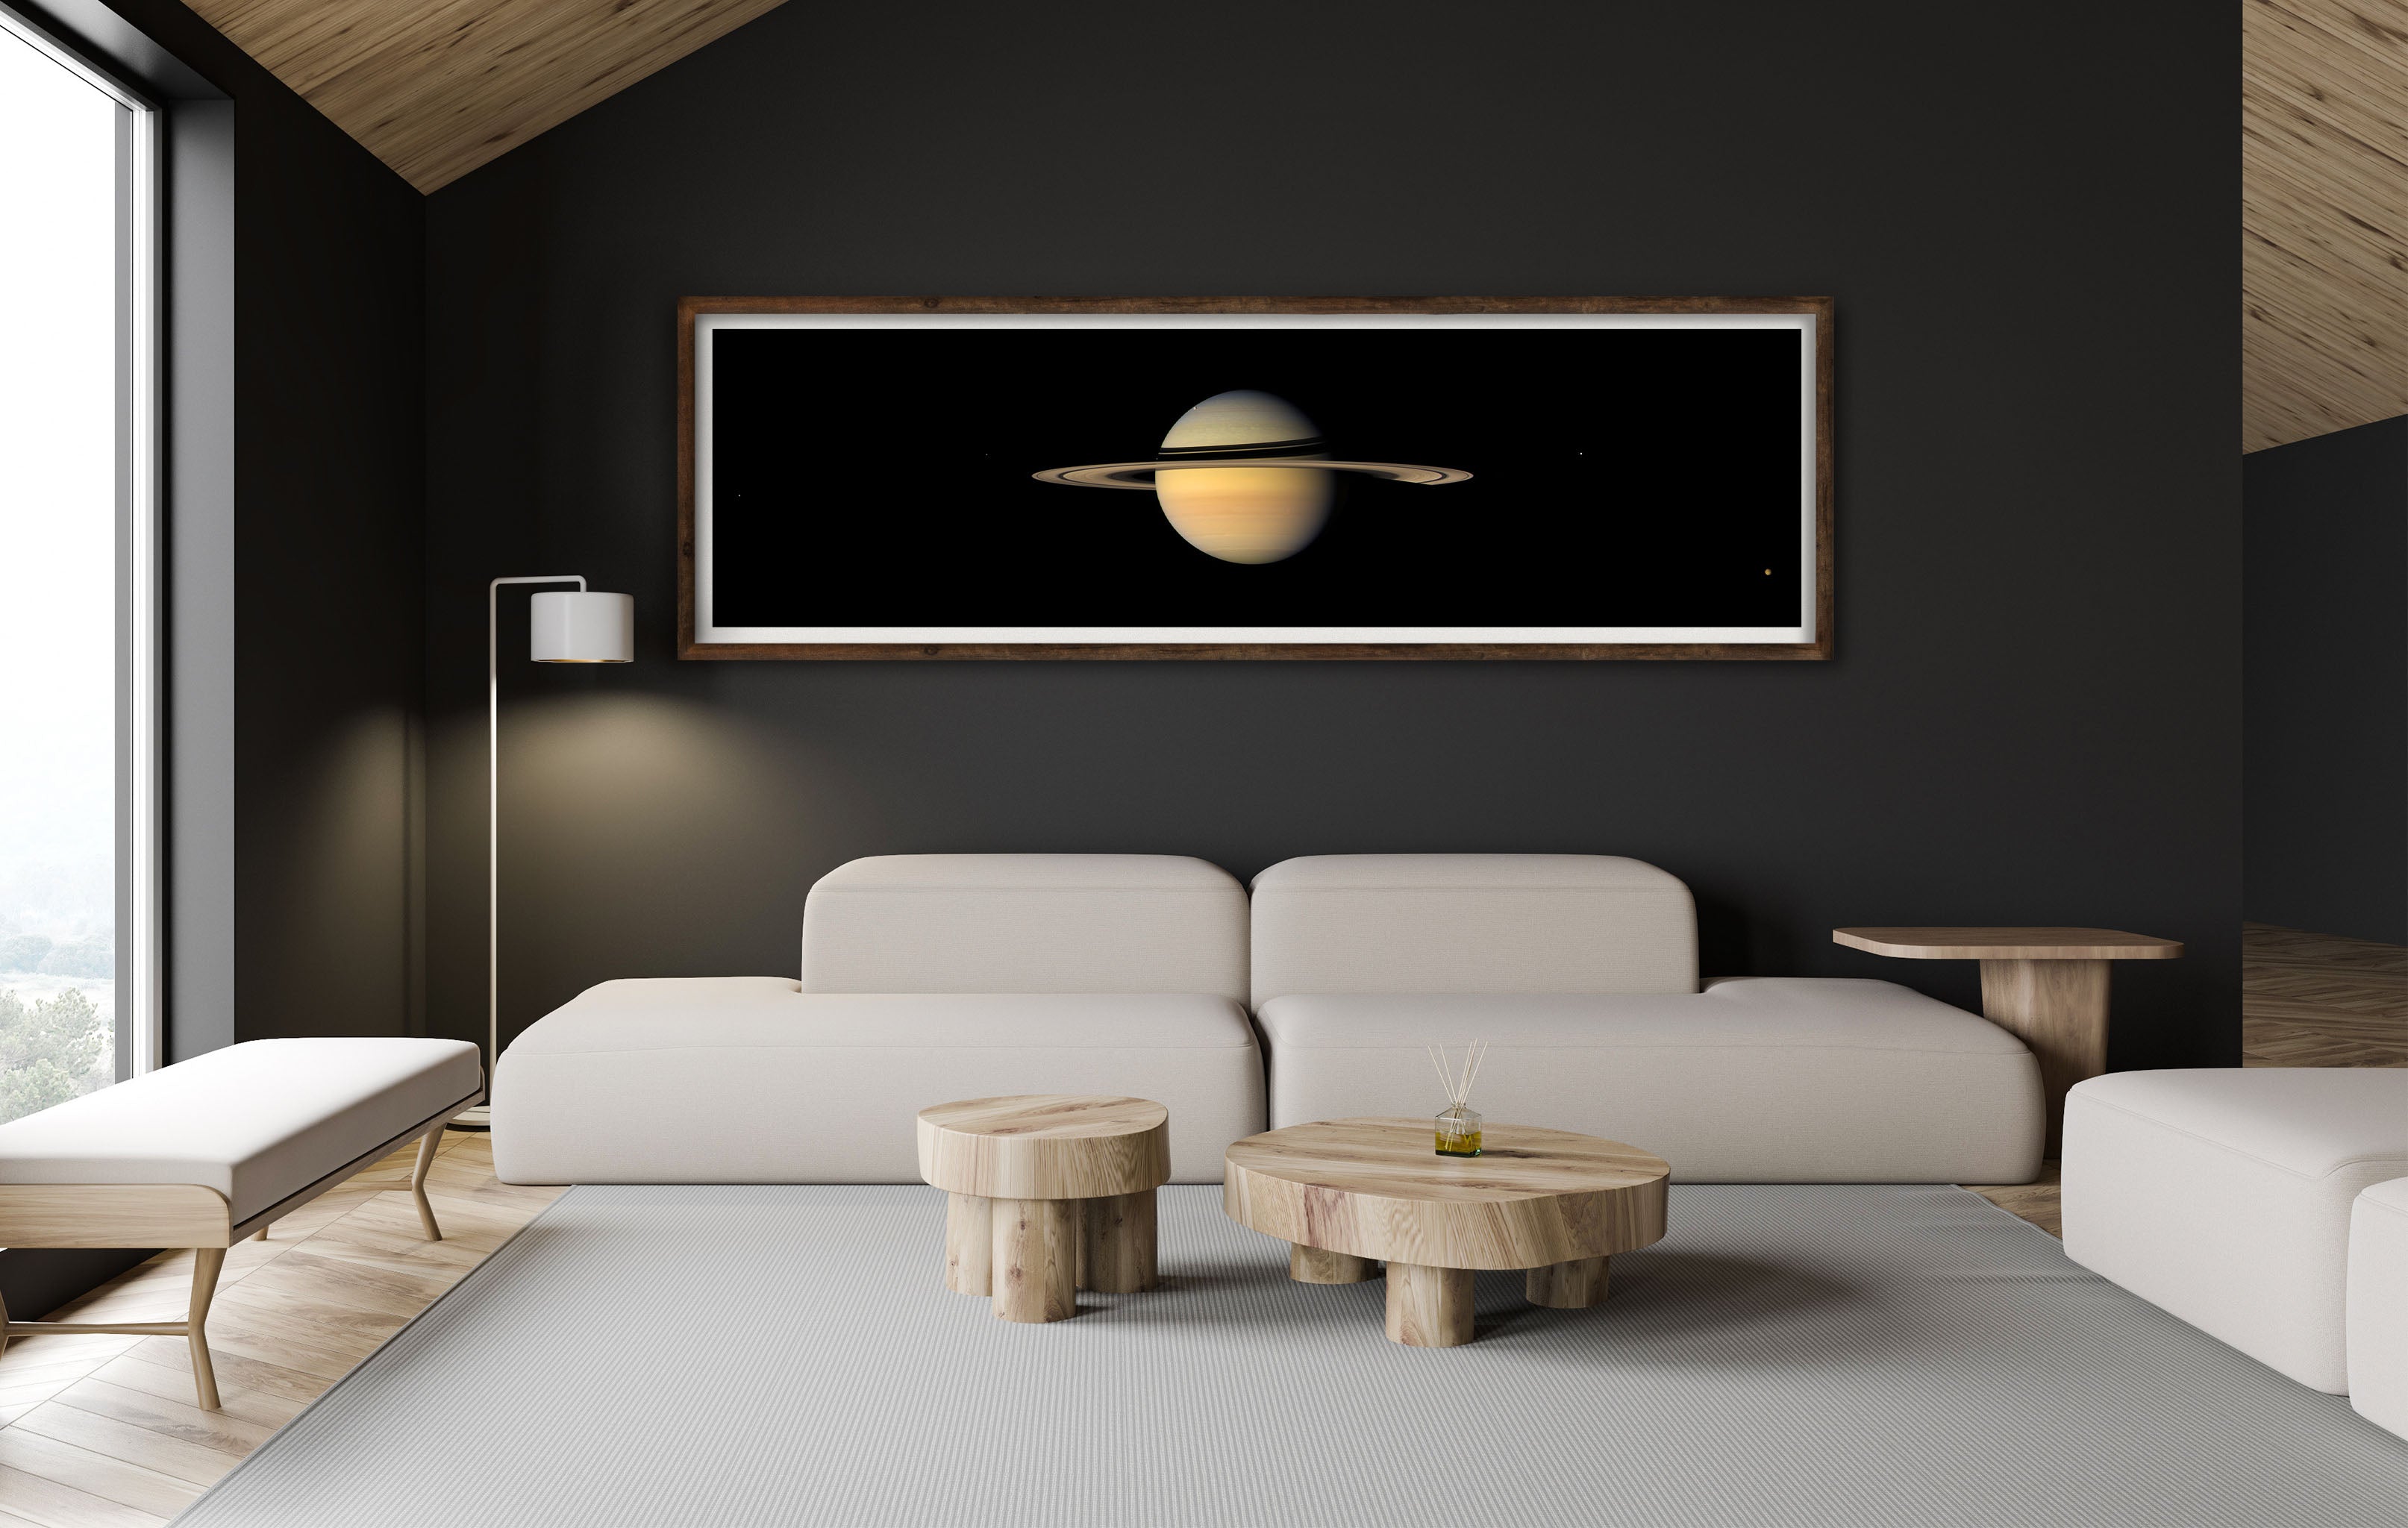 Saturn System Panorama